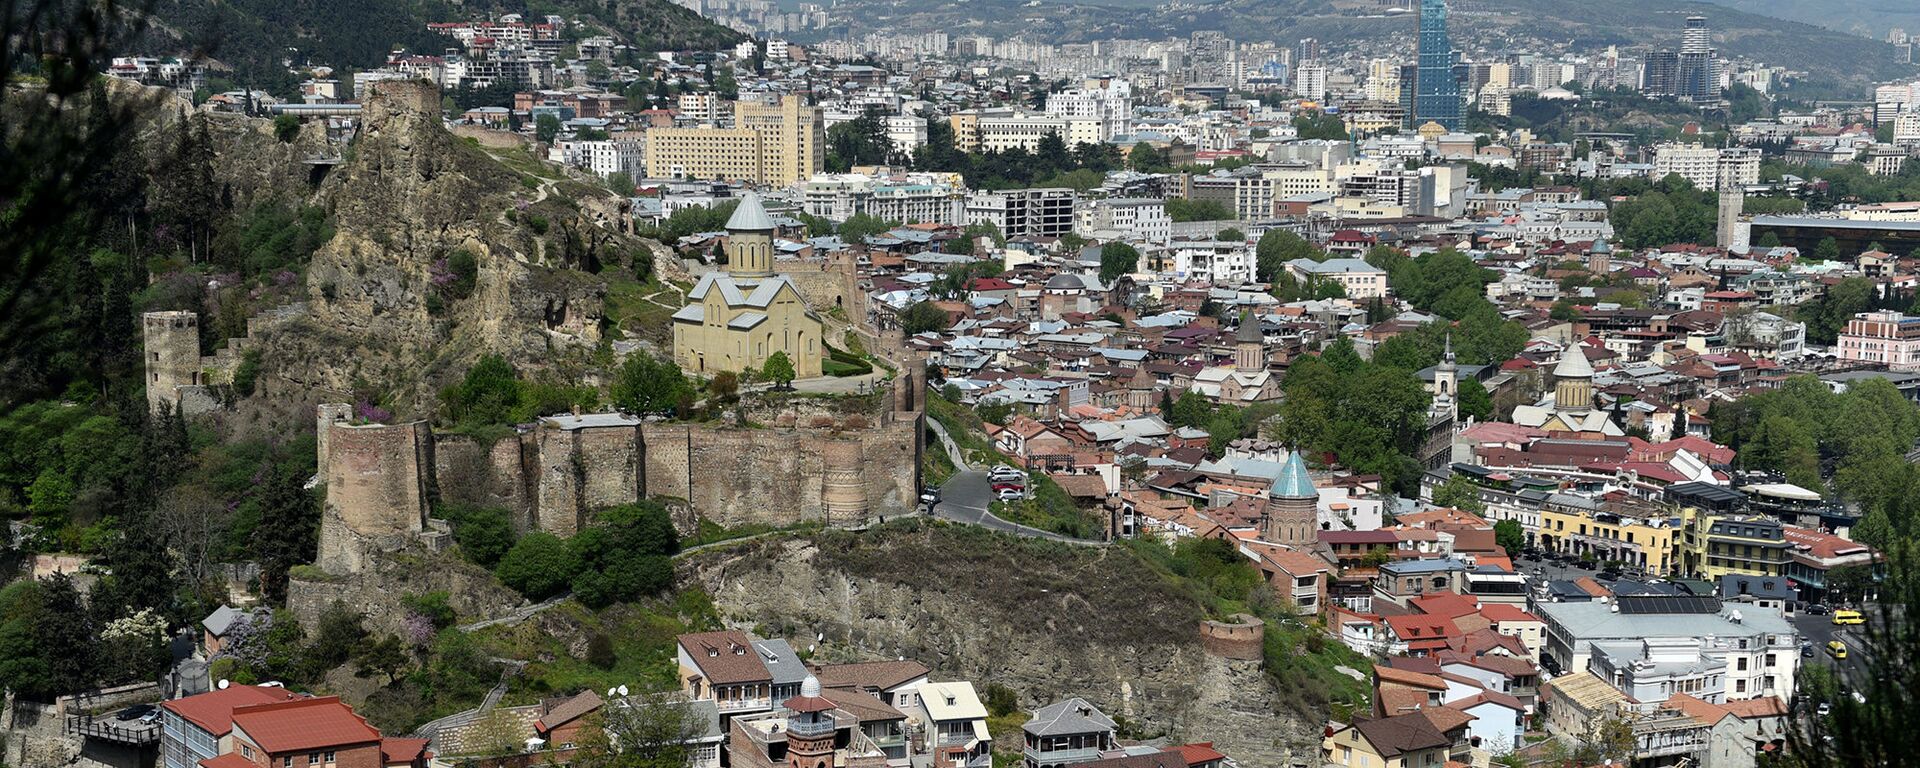 Город Тбилиси, Грузия - Sputnik Արմենիա, 1920, 03.10.2021